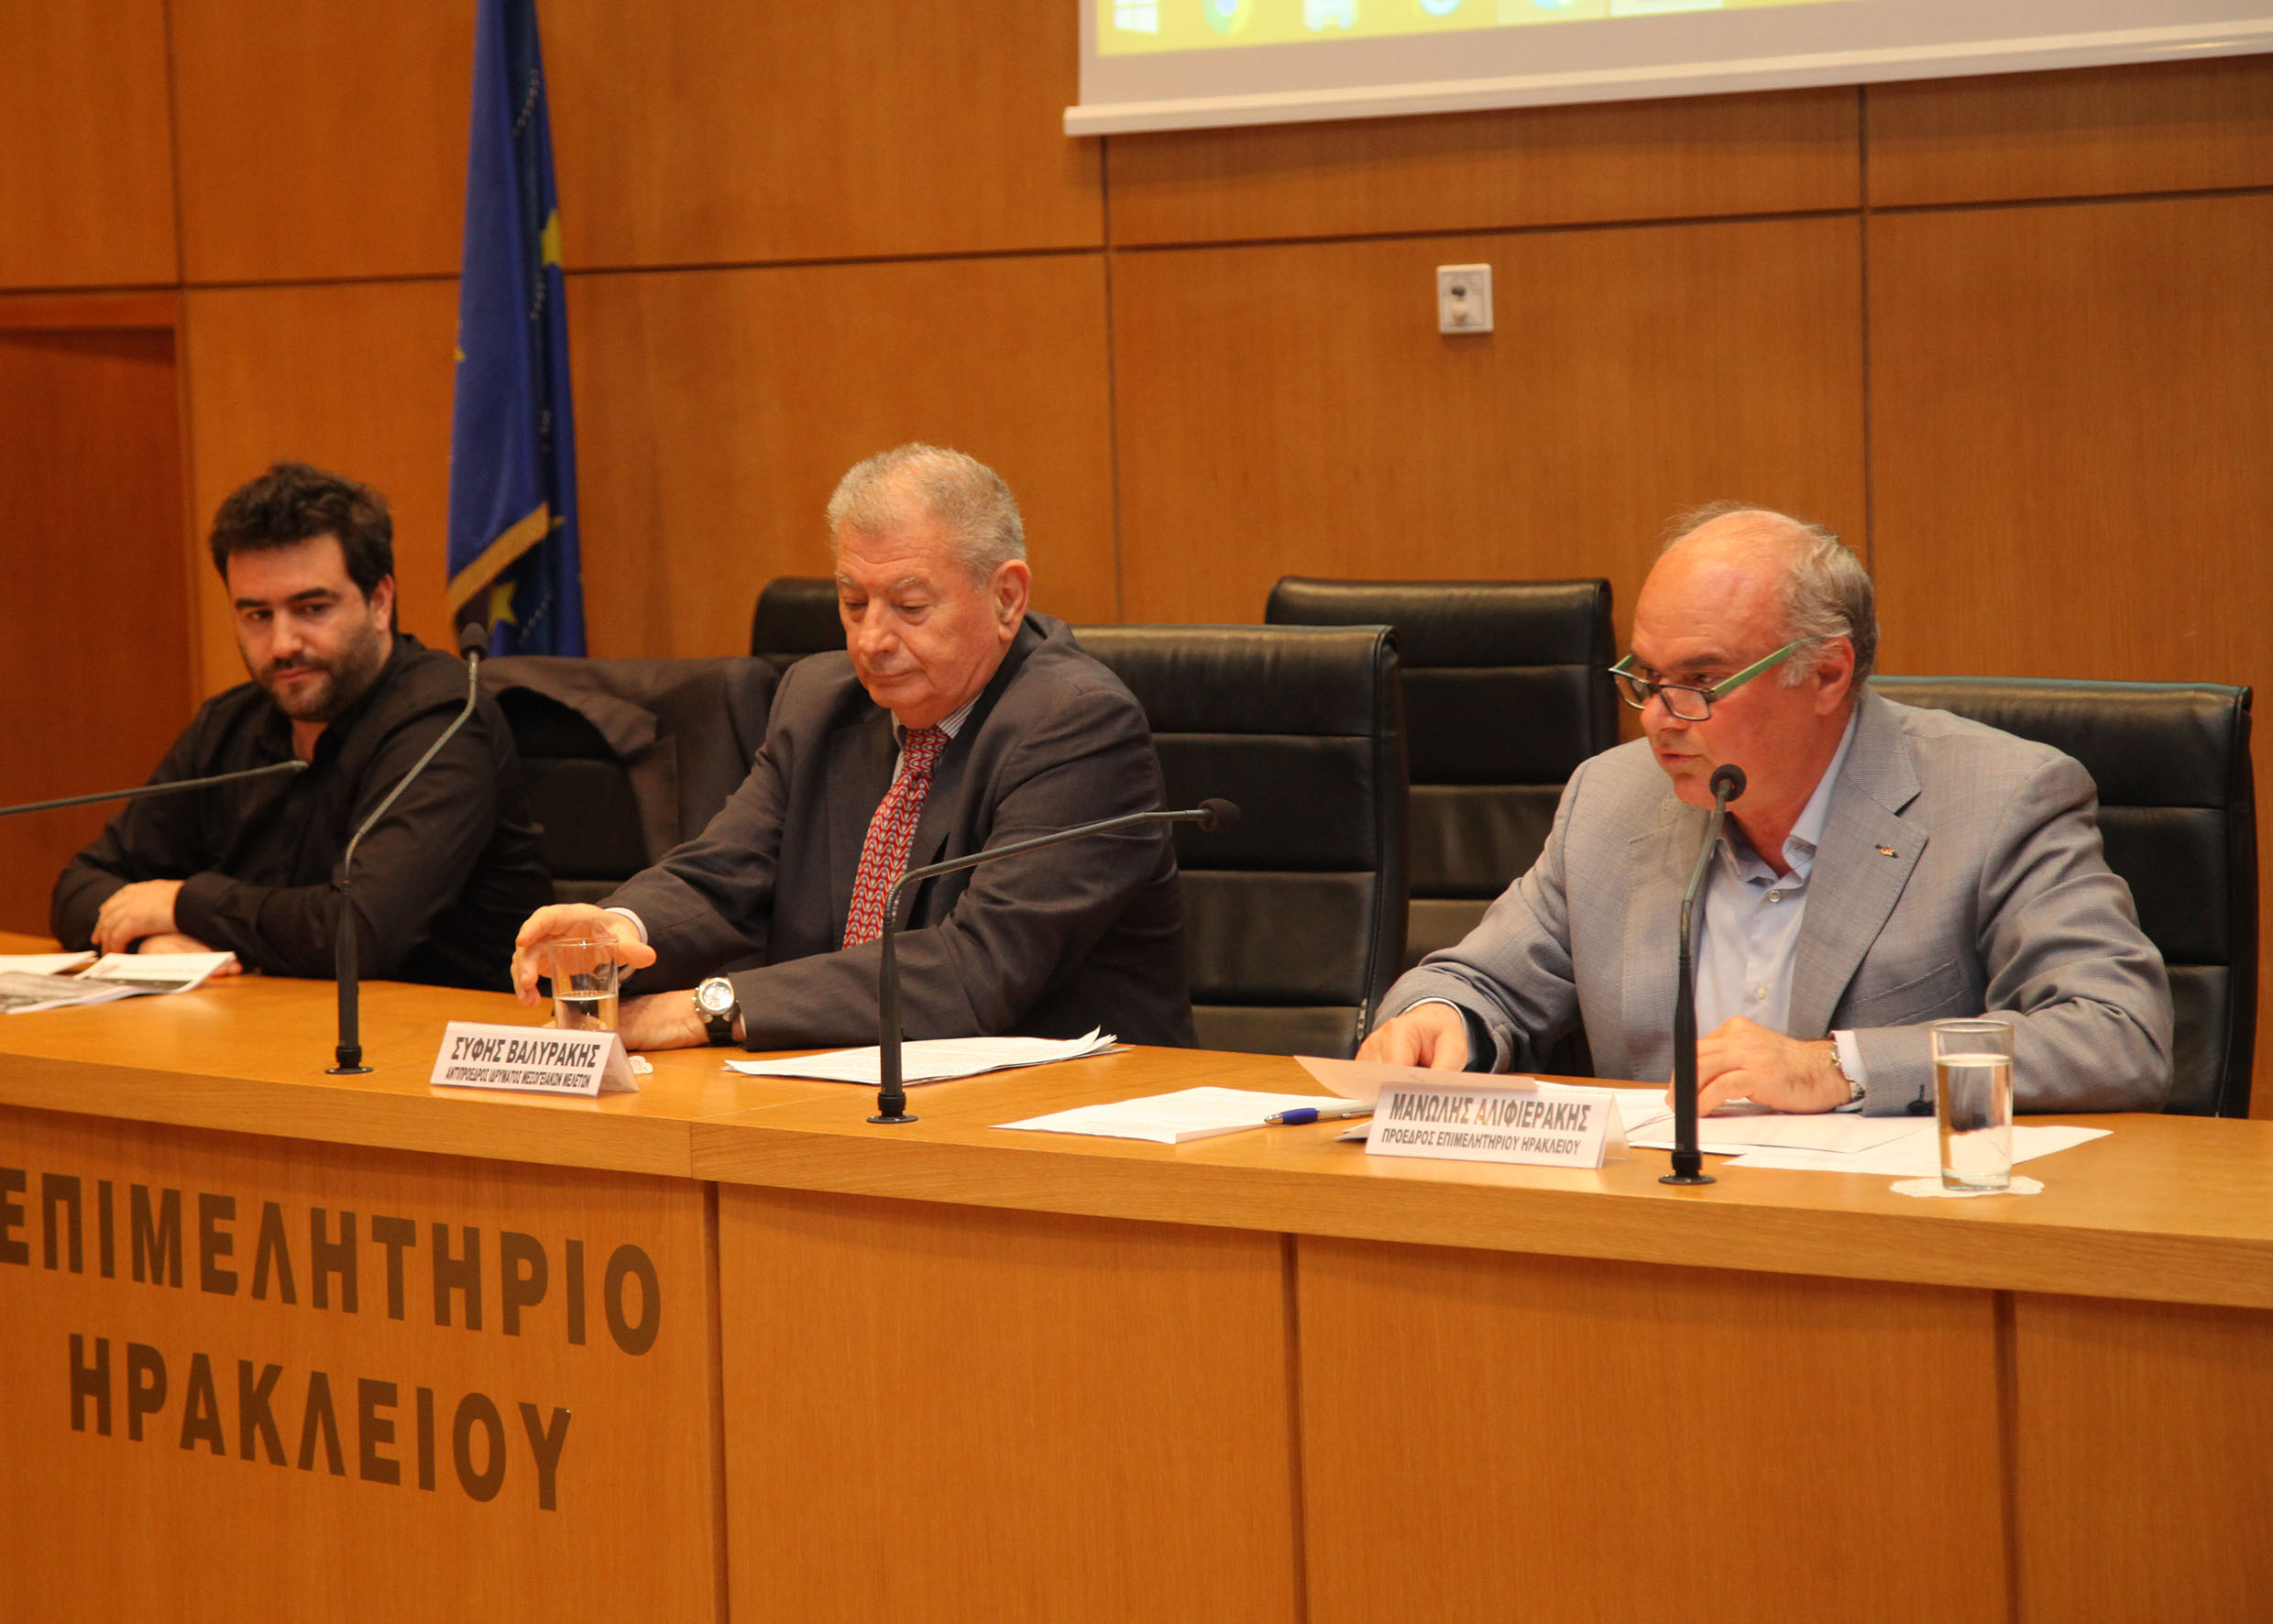 Πρόταση Εθνικής Στρατηγικής Βιώσιμης Ανάπτυξης από τον π. Υπουργό κ. Σήφη Βαλυράκη στο Επιμελητήριο Ηρακλείου